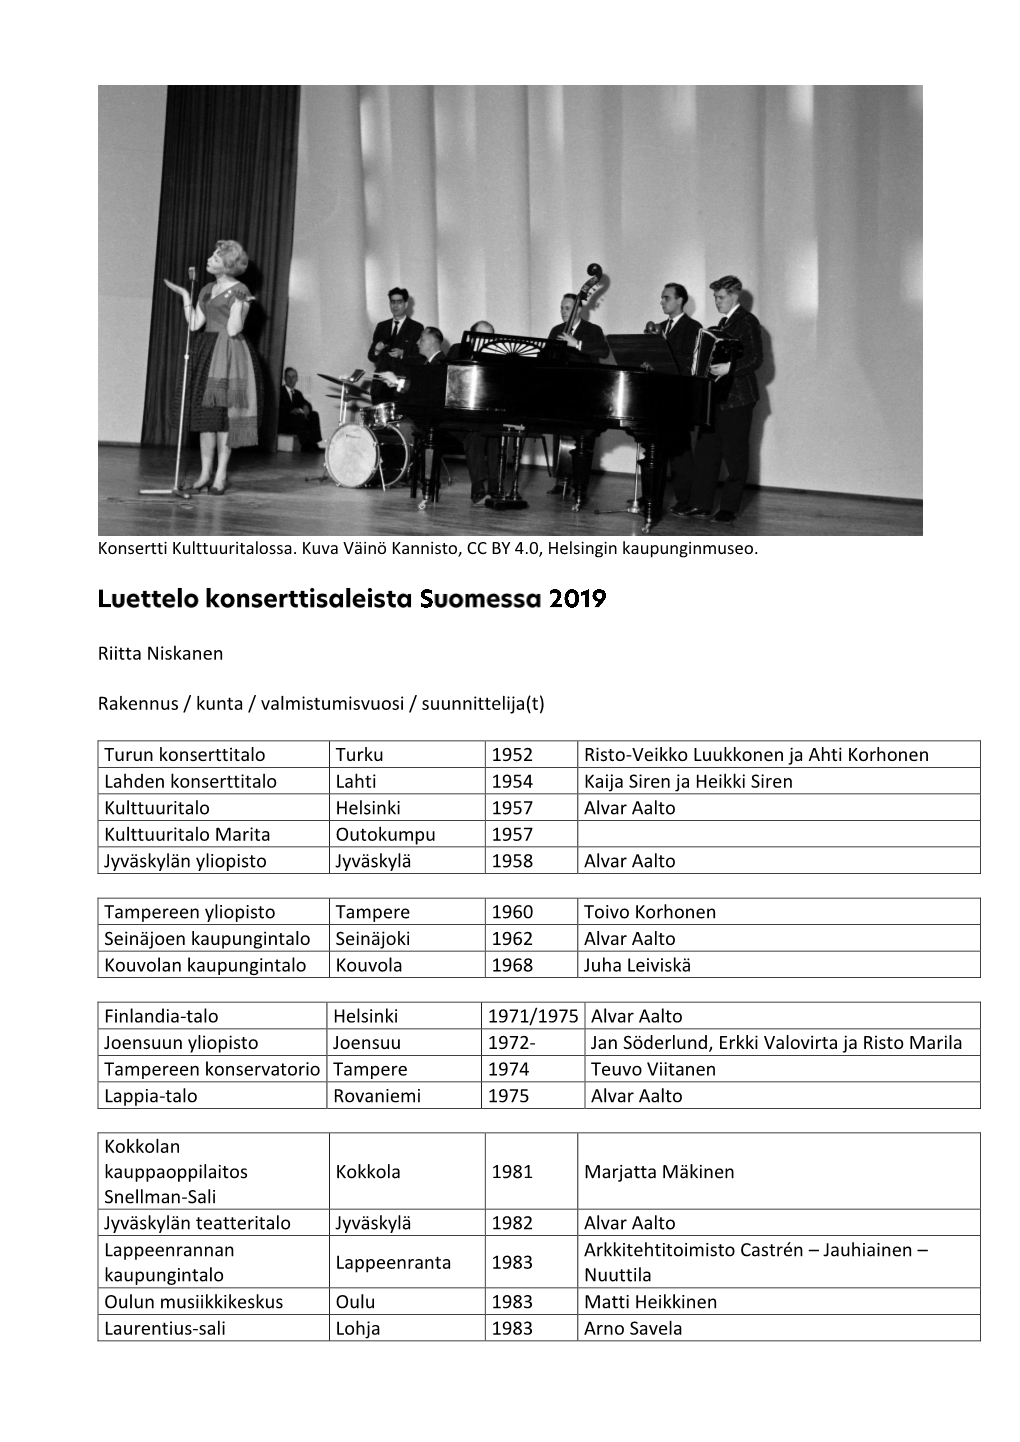 Luettelo Konserttisaleista Suomessa 2019